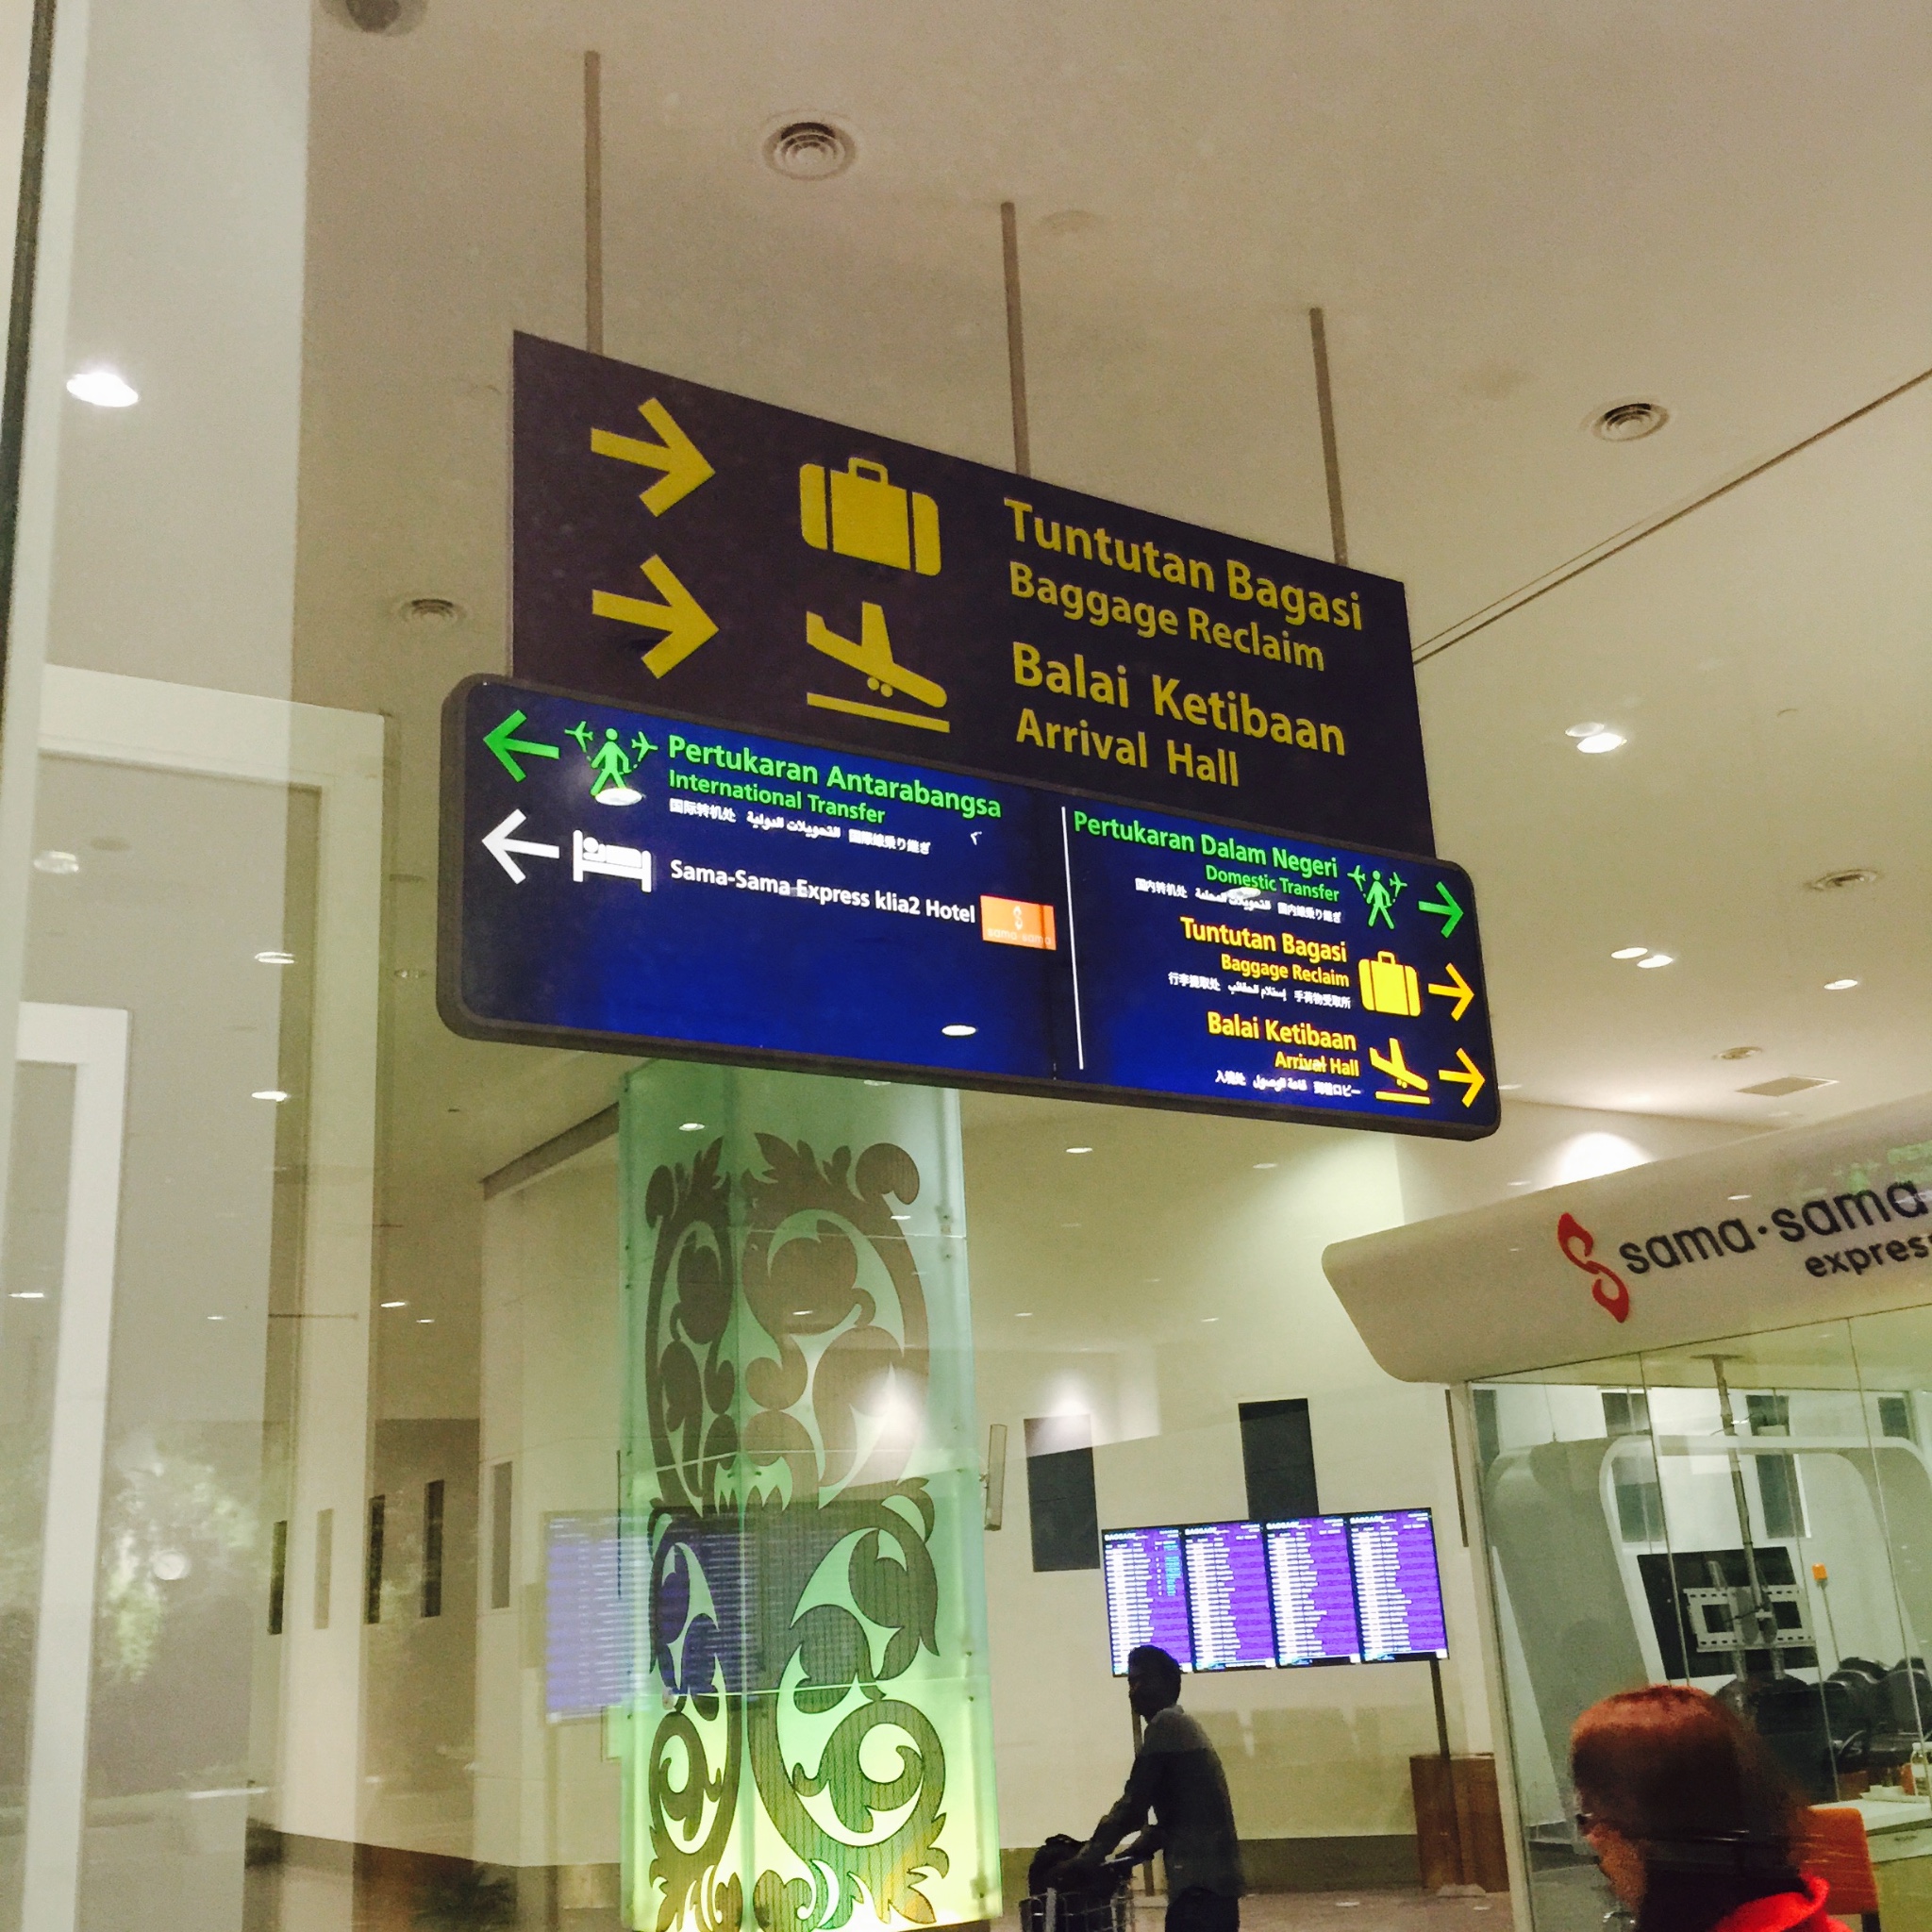 非联程亚航机票2小时吉隆坡转机时间够吗?如何快速办理?